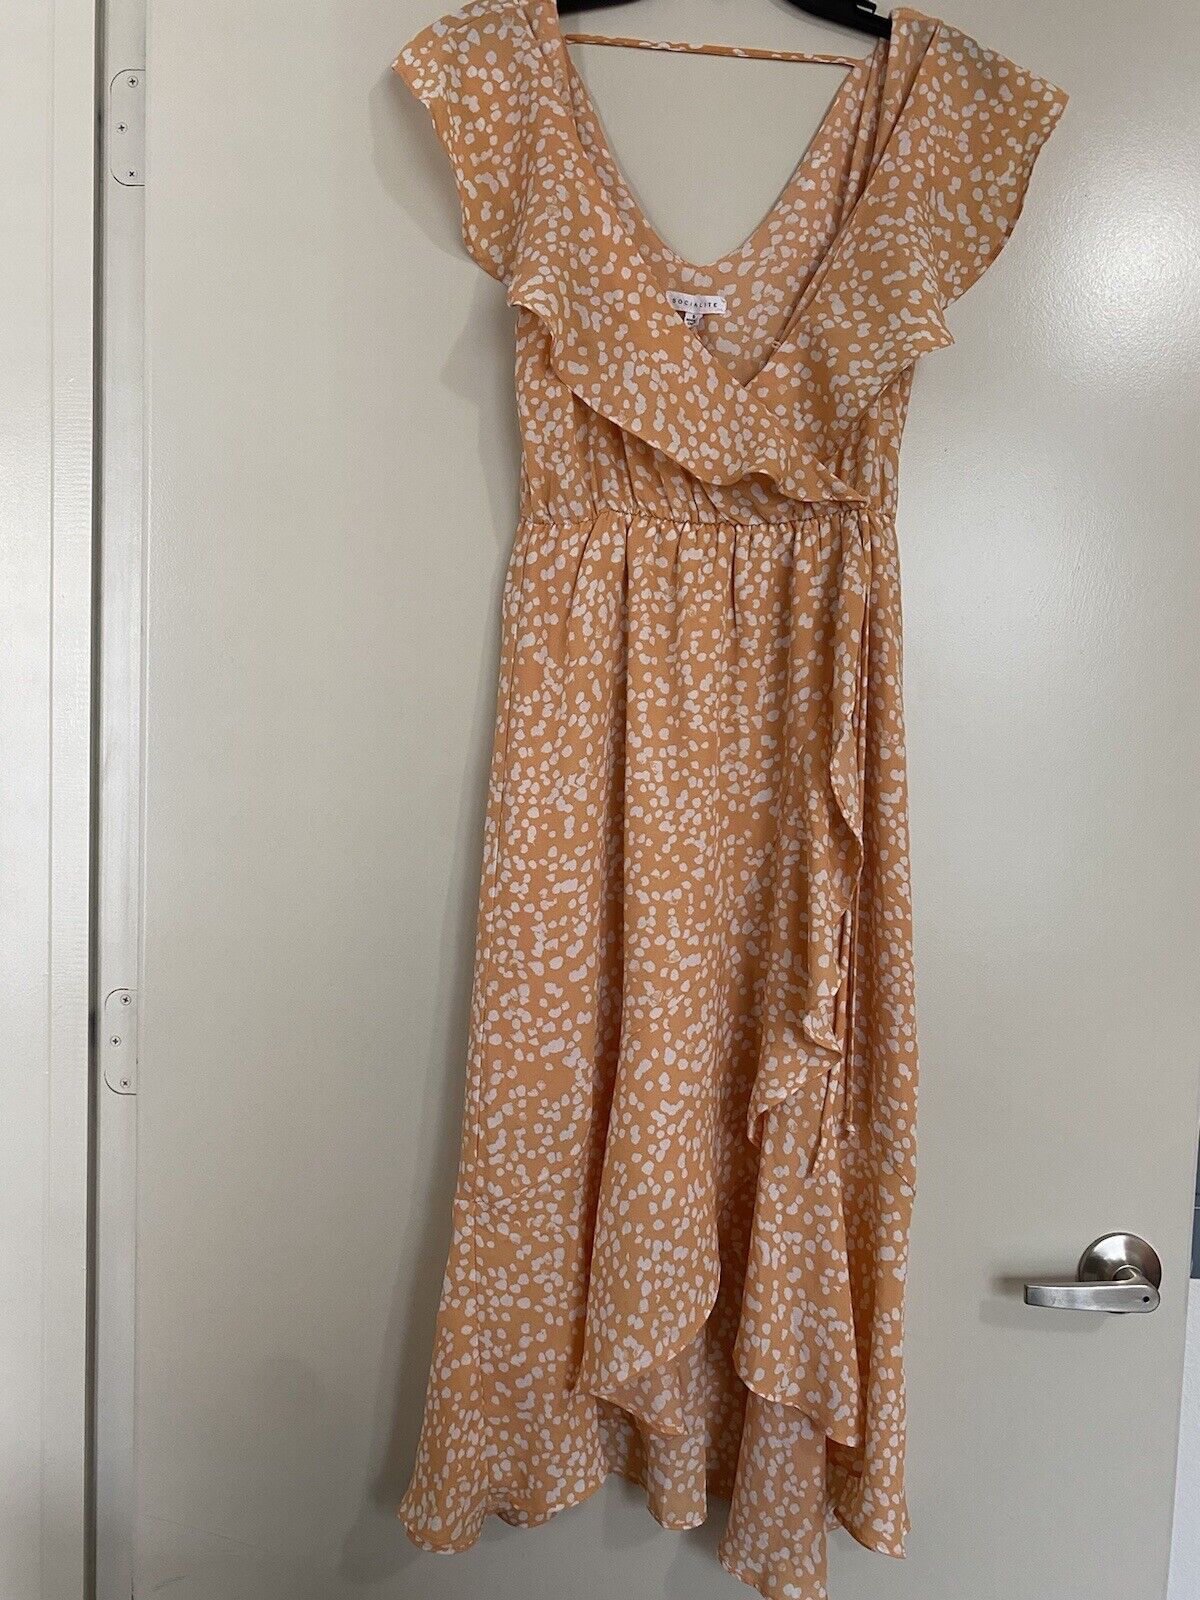 SOCIALITE Orange Ruffle Trim Faux Wrap Dress Size Small